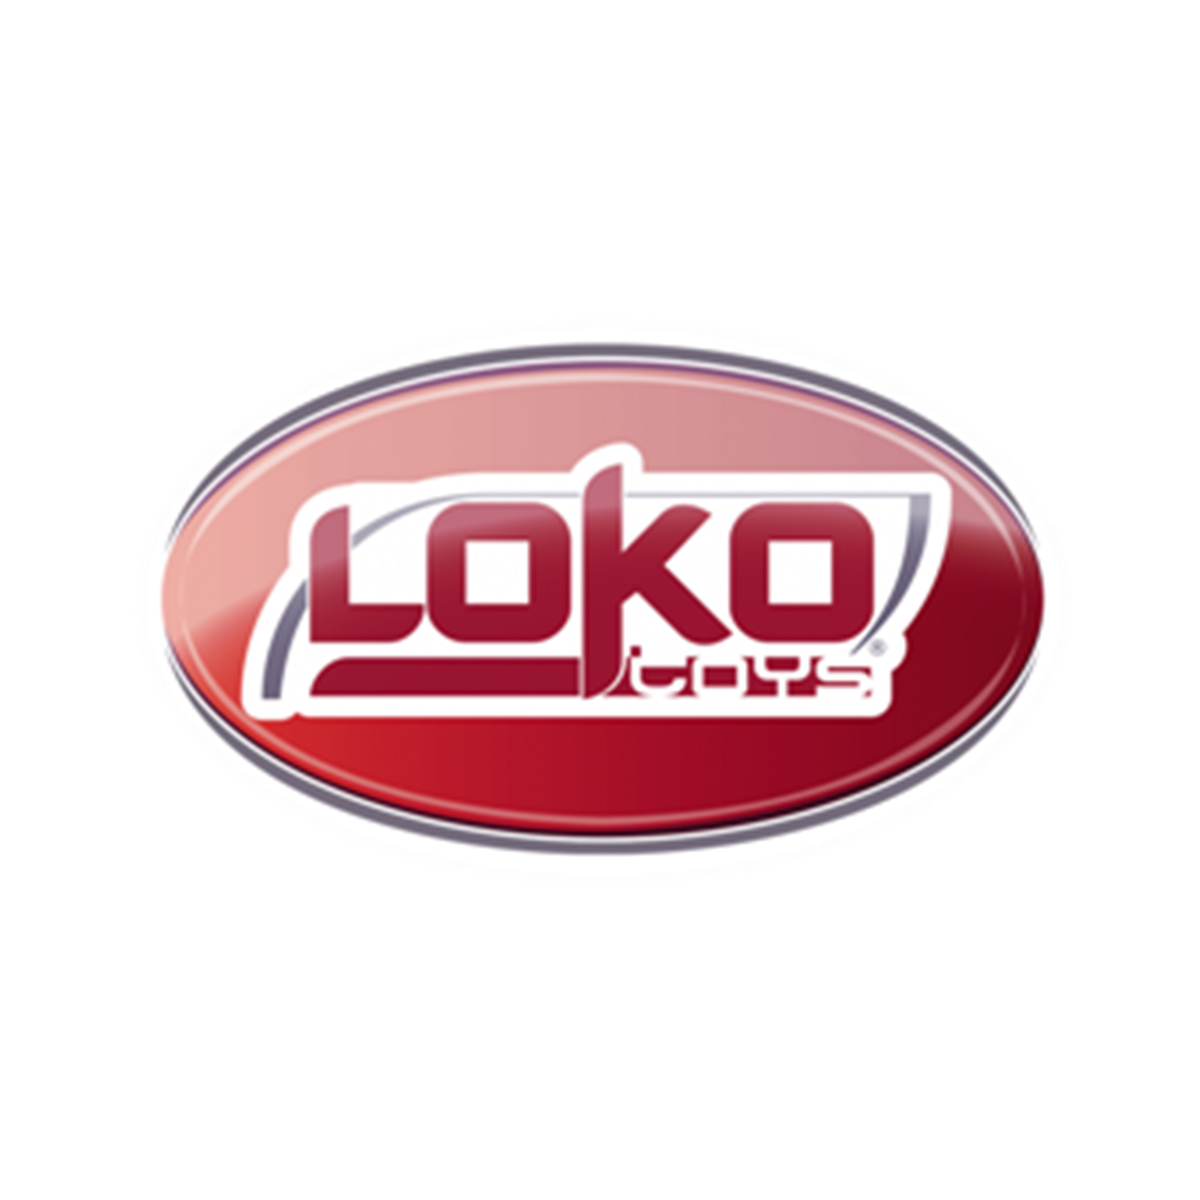 logo lokotoys